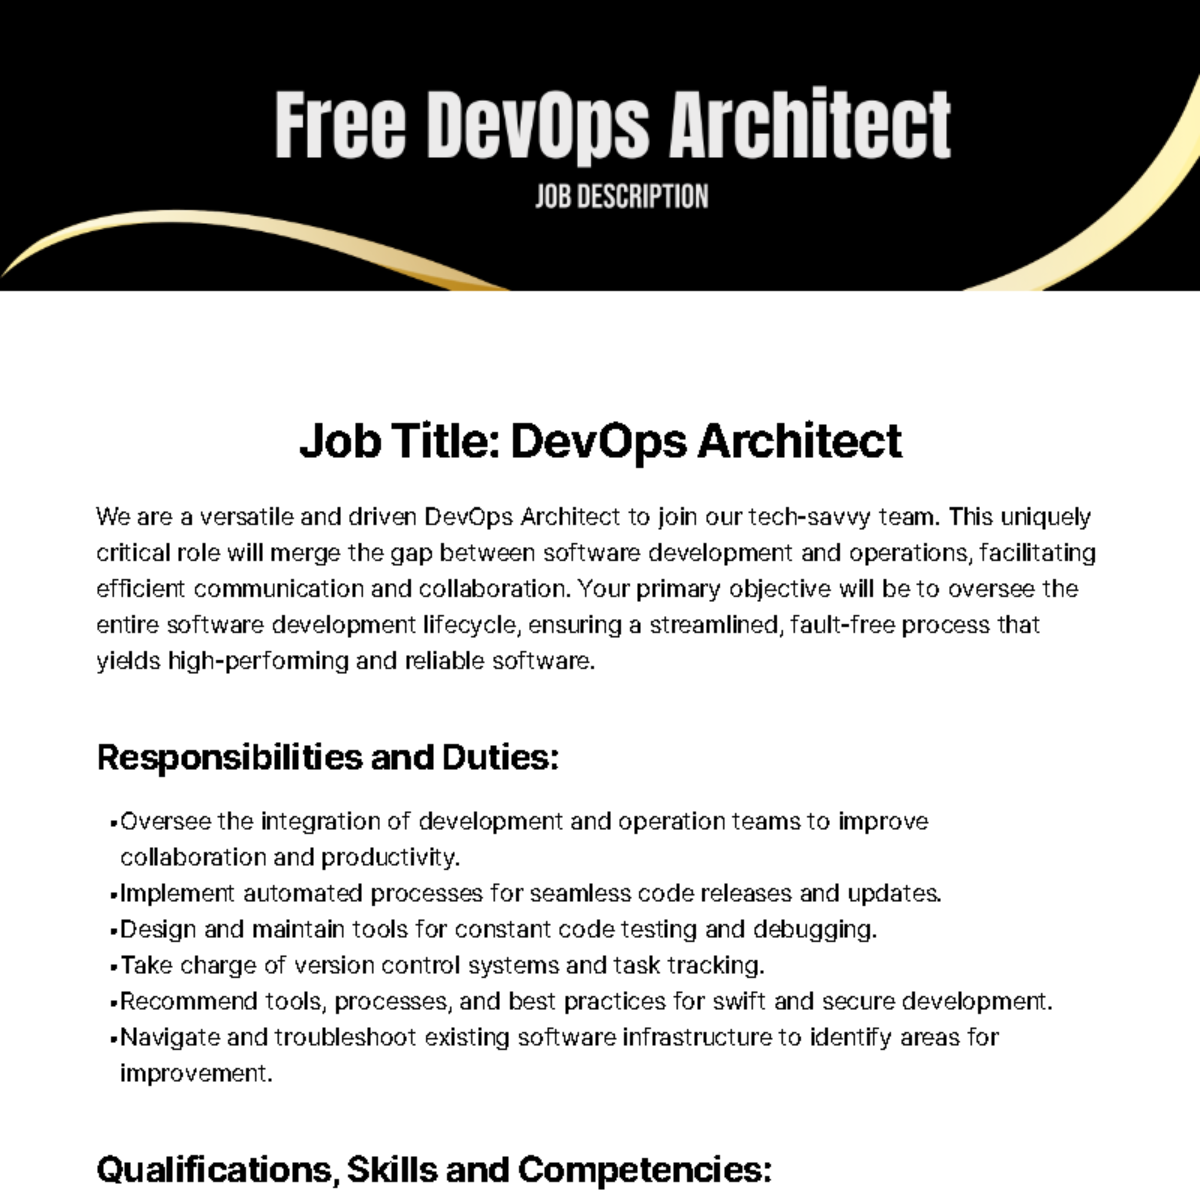 Free DevOps Architect Job Description Template